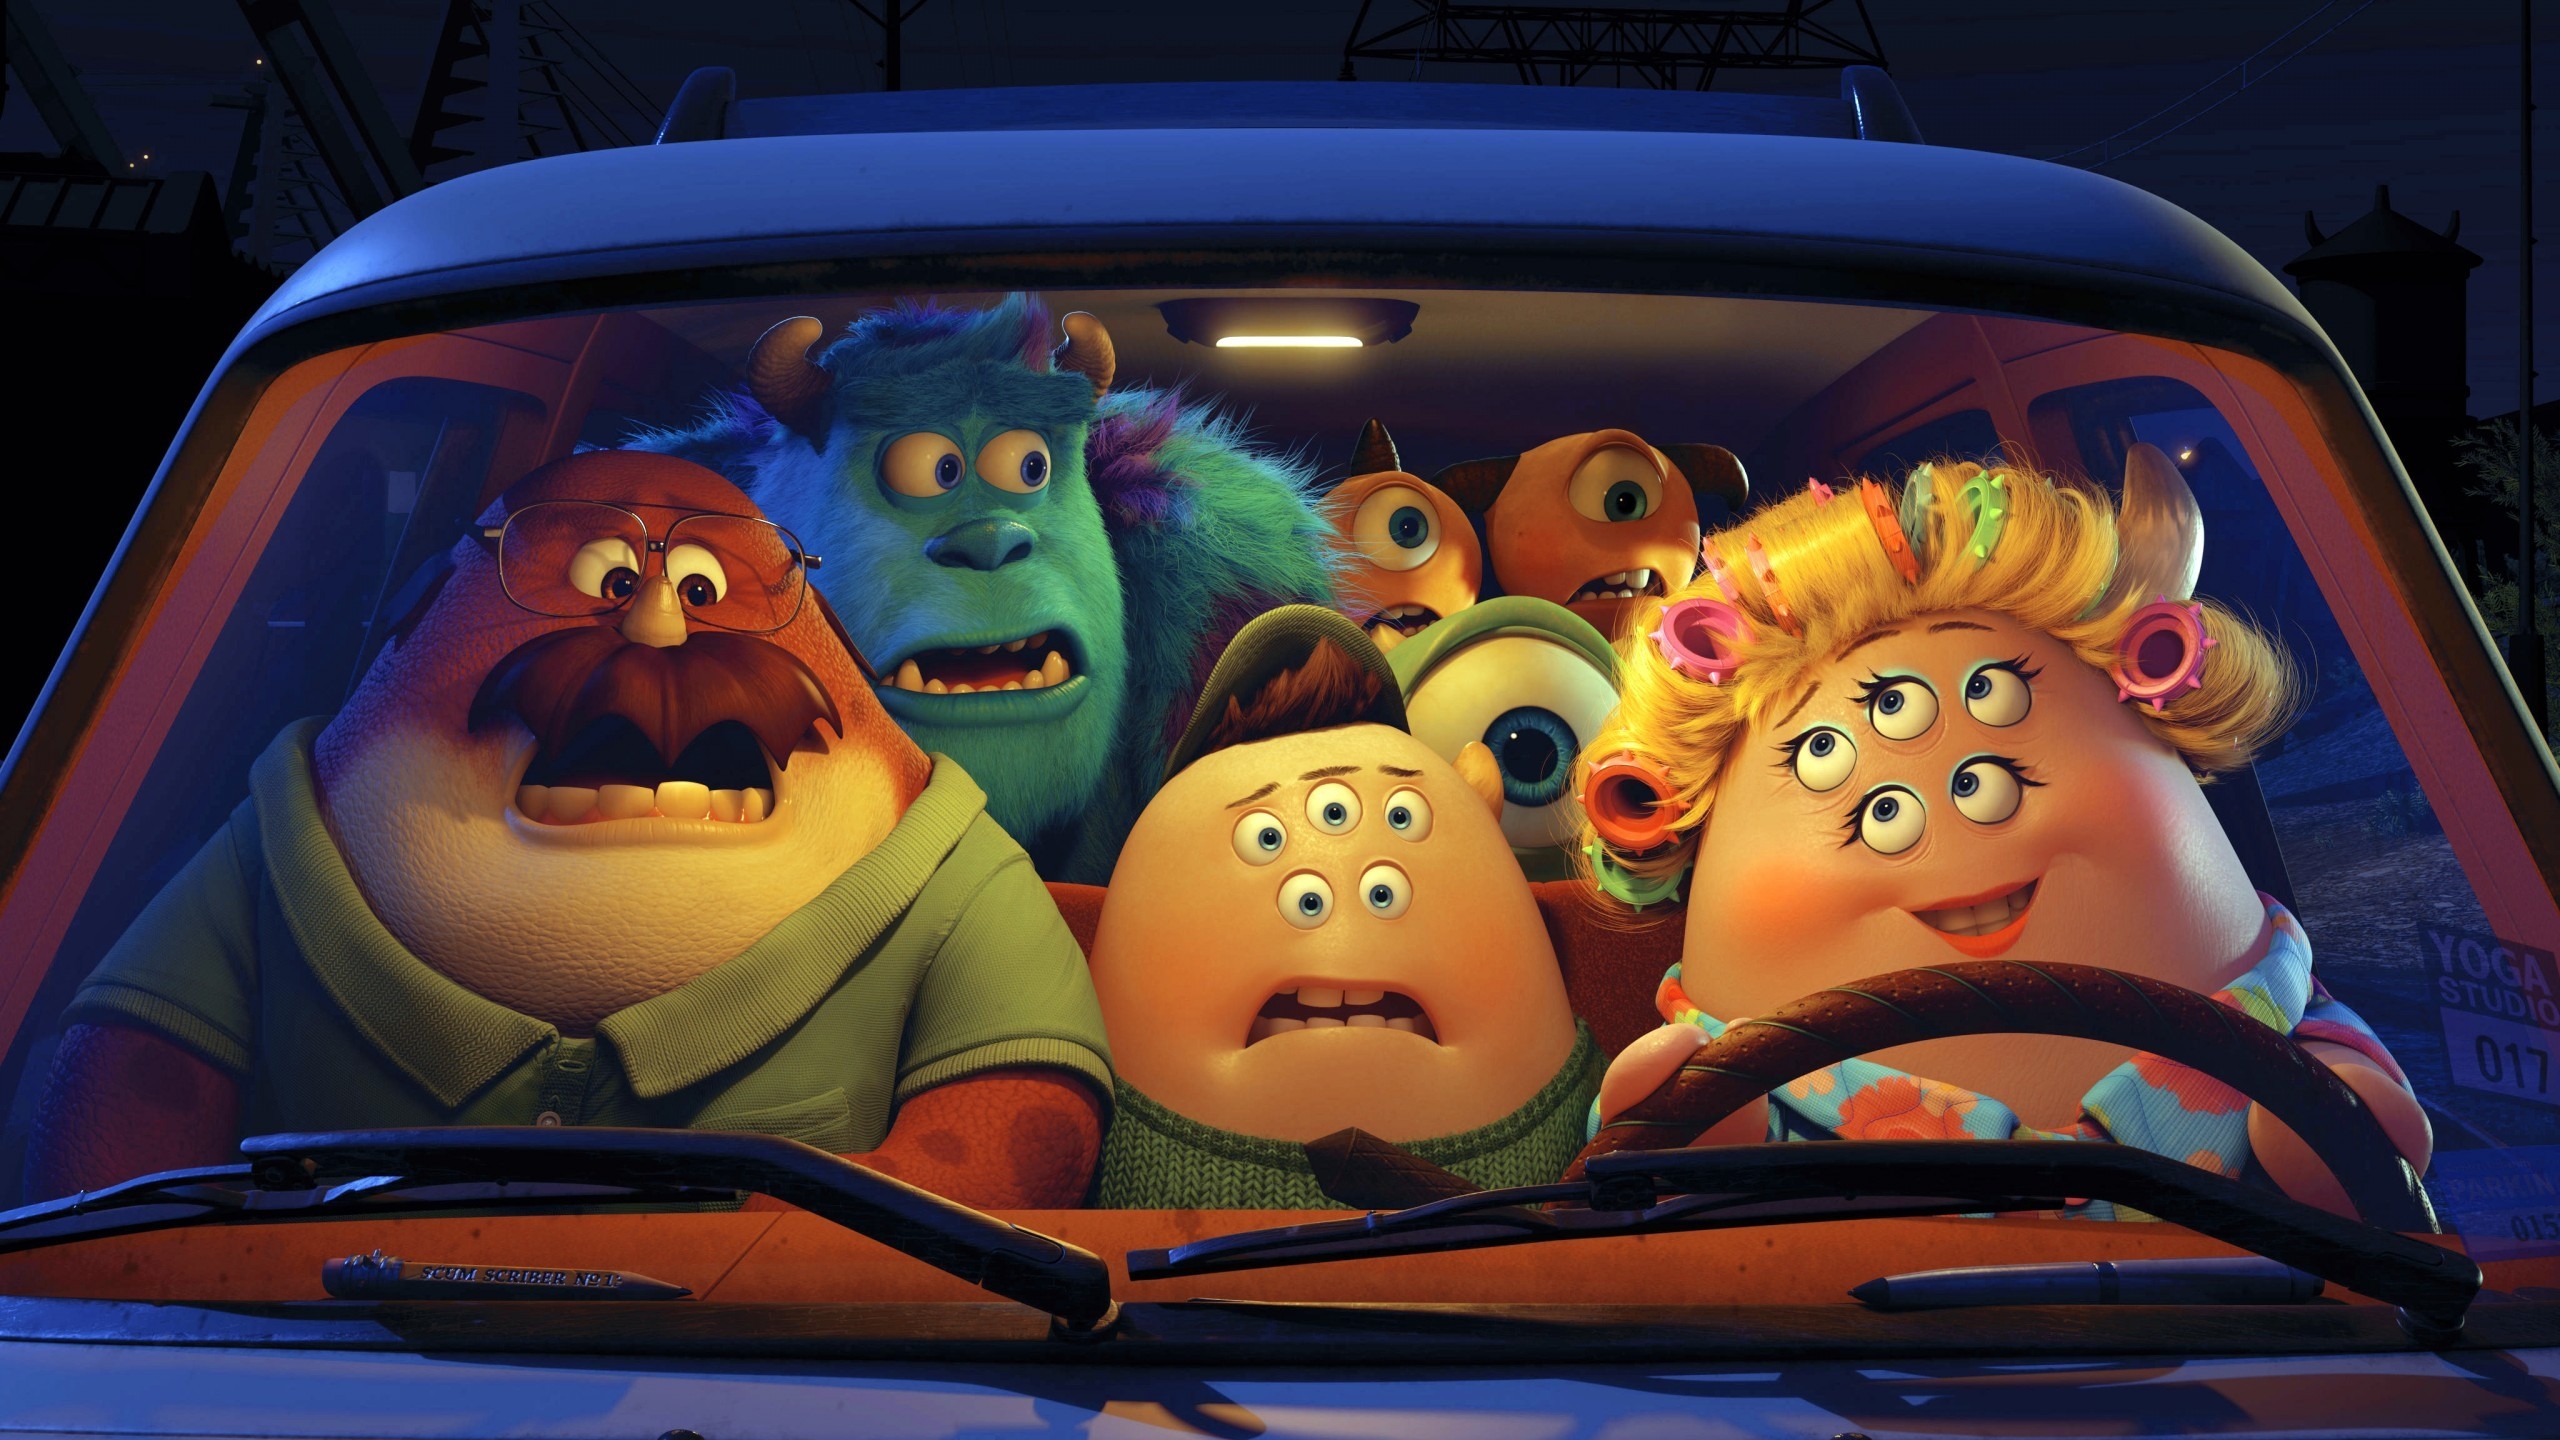 Pixar Monsters University Film for 2560x1440 HDTV resolution